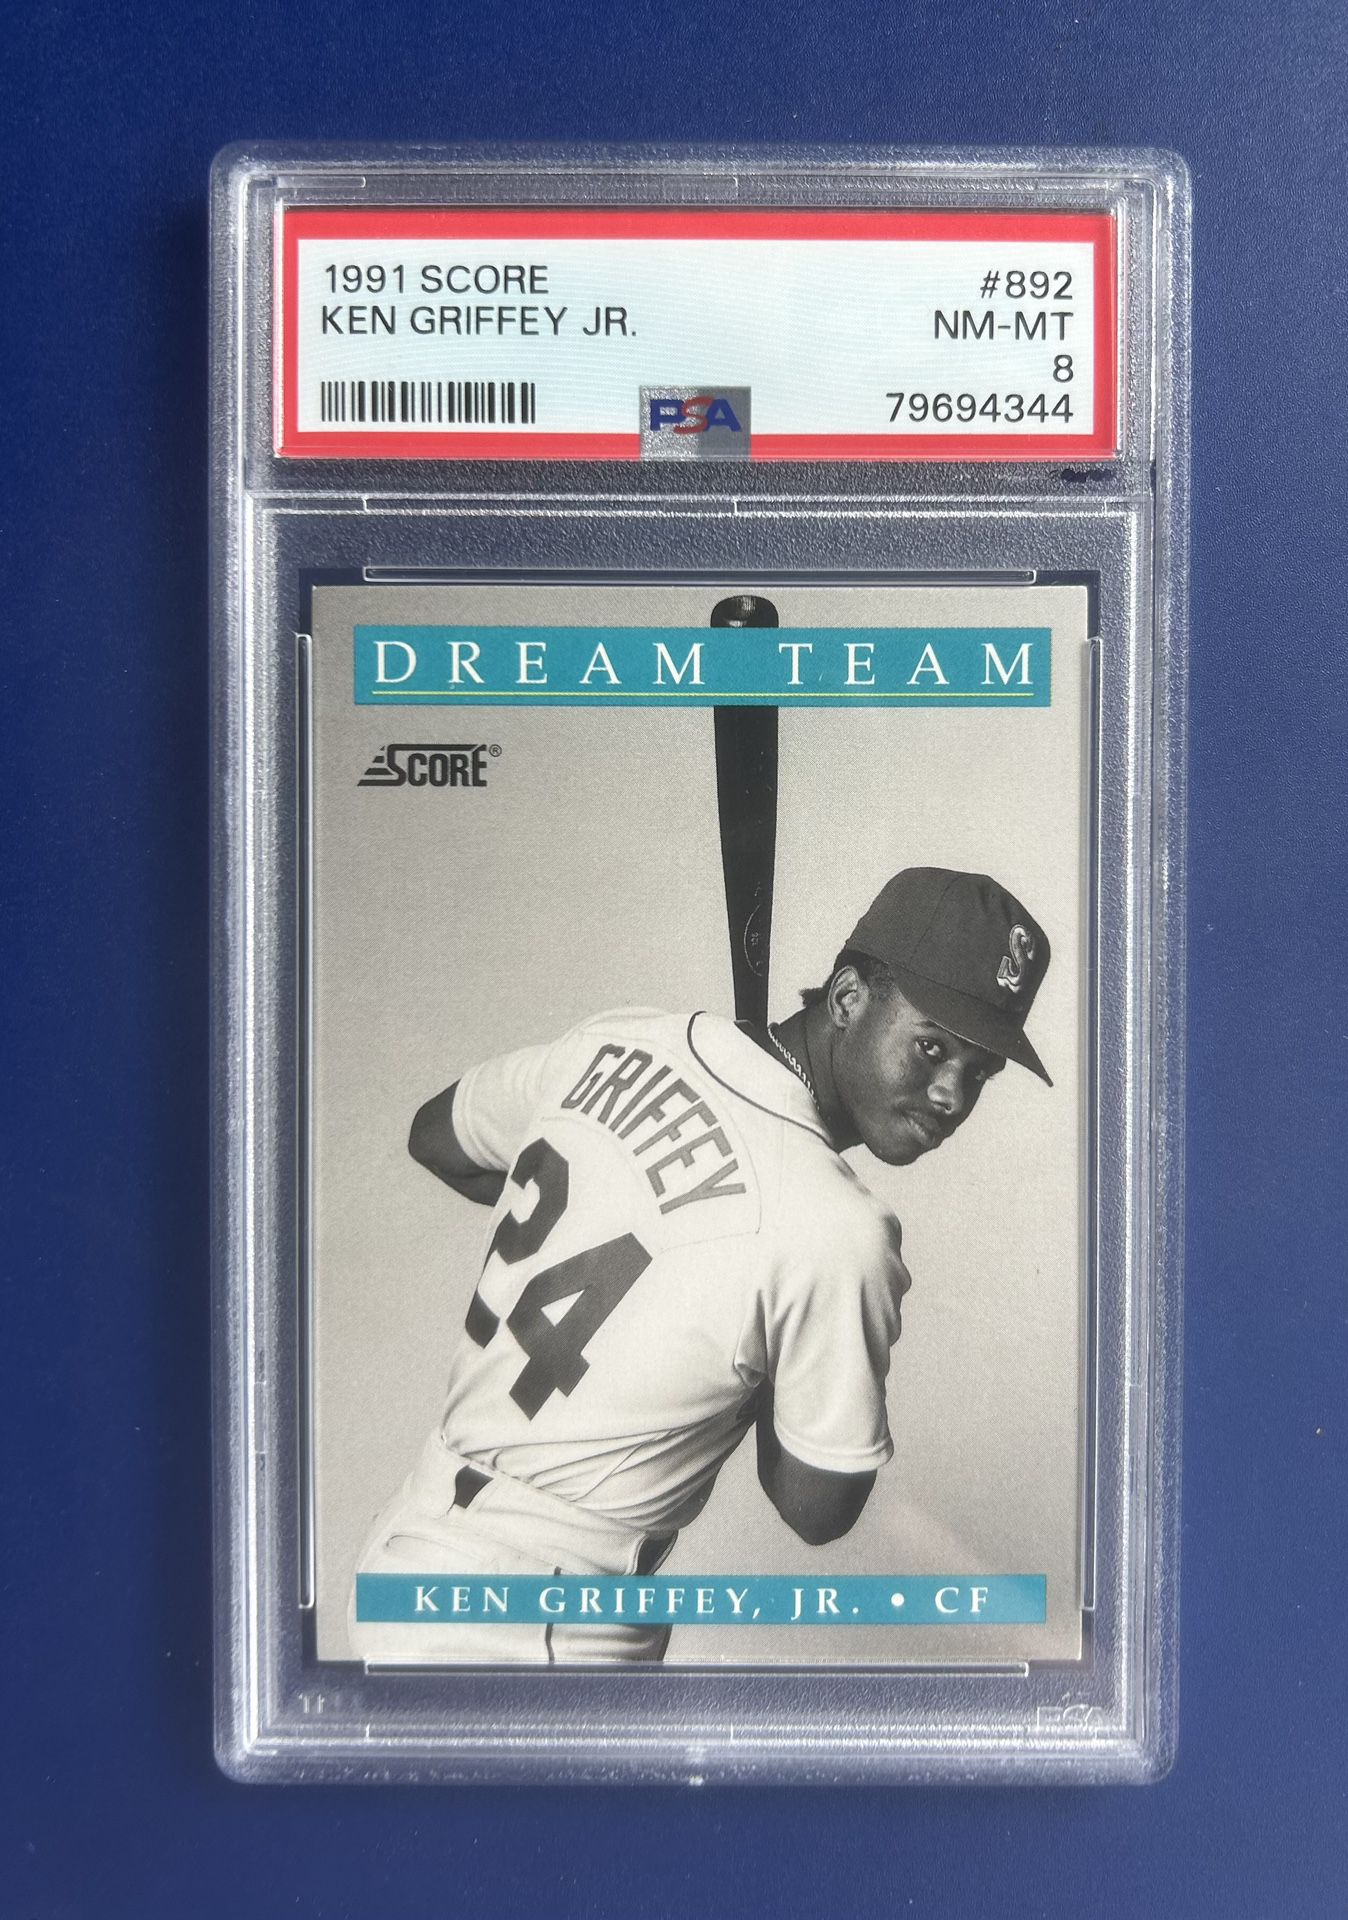 1991 Score Ken Griffey Jr Baseball Card Graded PSA 8